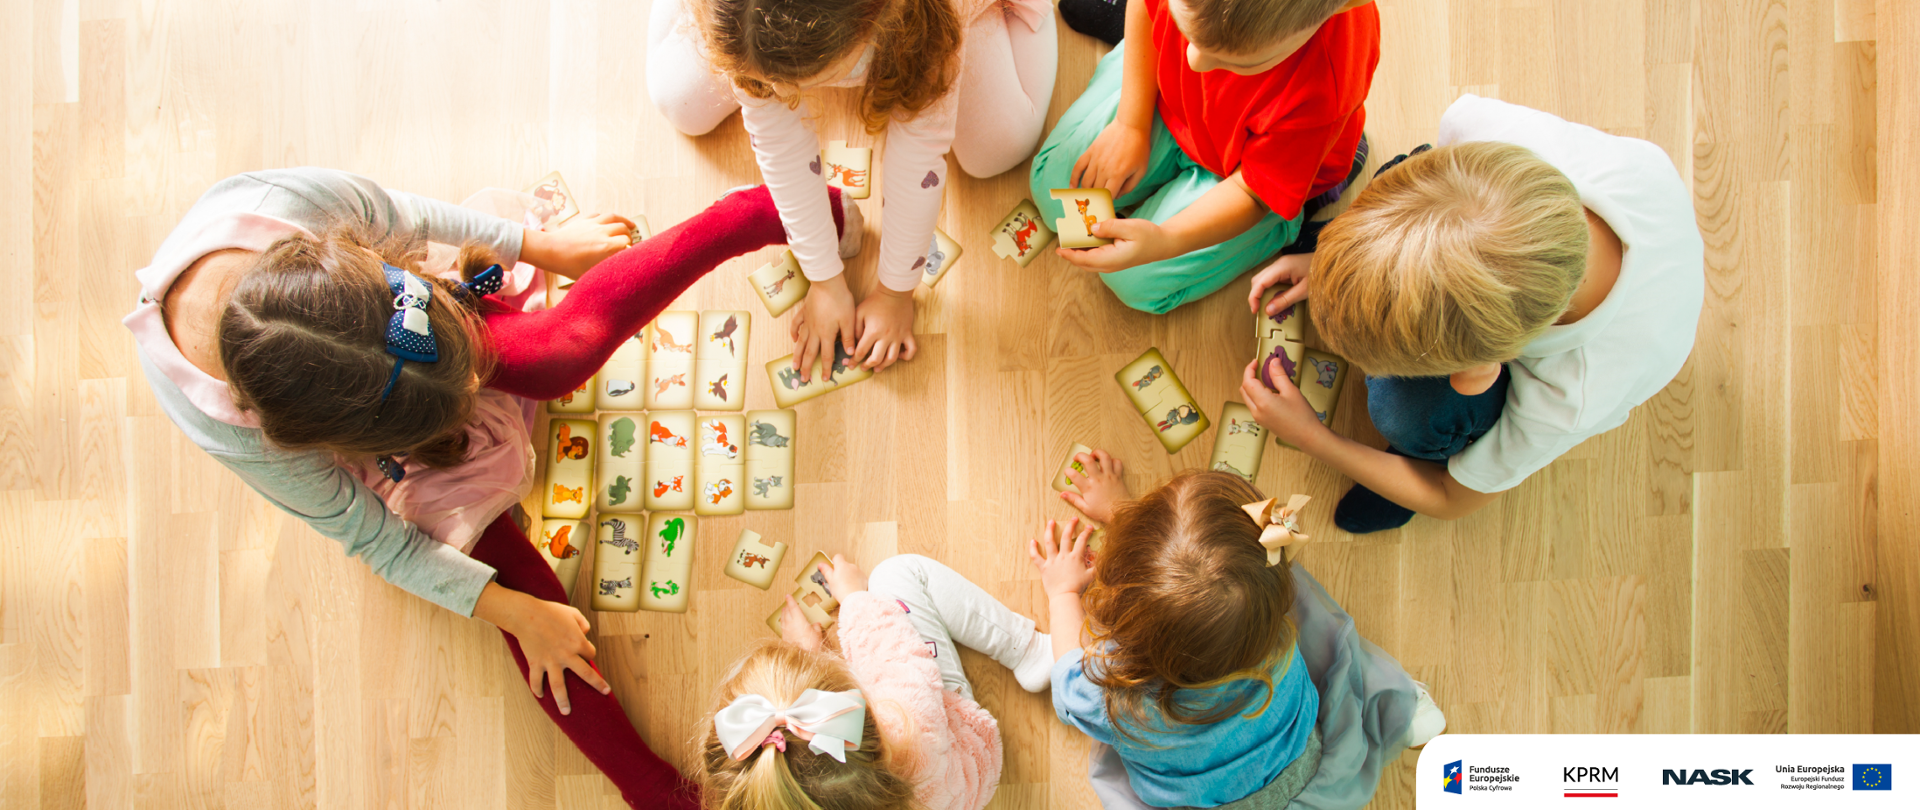 Zdjęcie przedstawia siedzące na podłodze dzieci, grające w grę. W prawym dolnym rogu logotypy: Fundusze Europejskie, KPRM, NASK, UE.